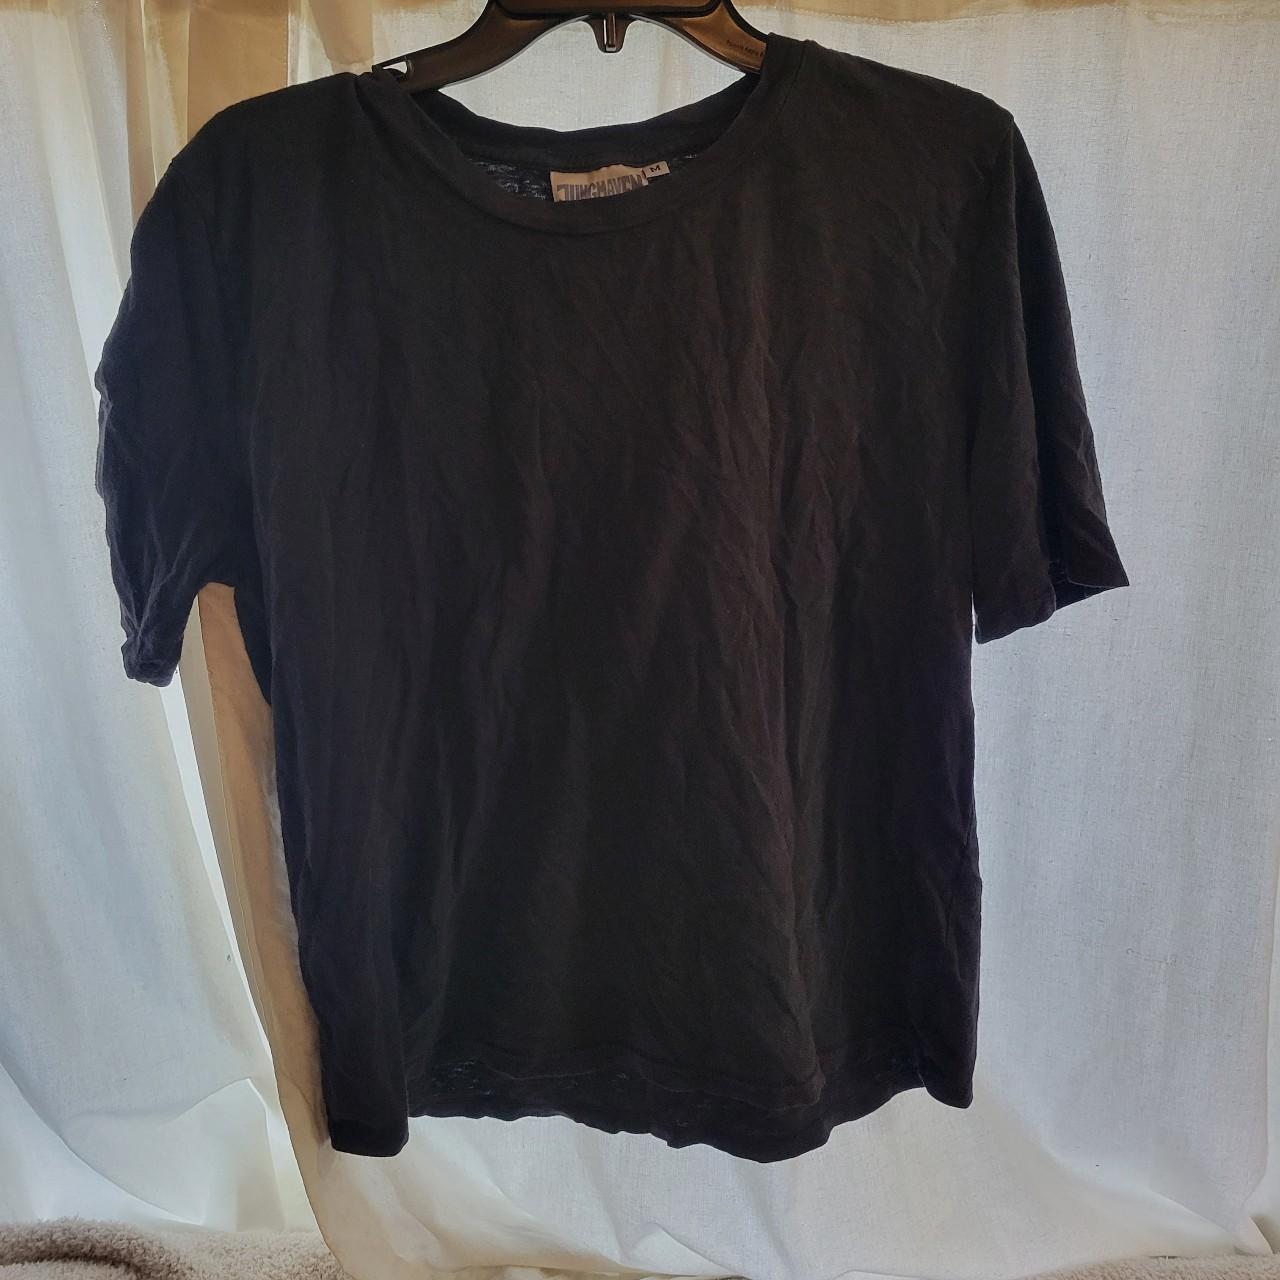 Jungmaven hemp and organic cotton t shirt. Size... - Depop